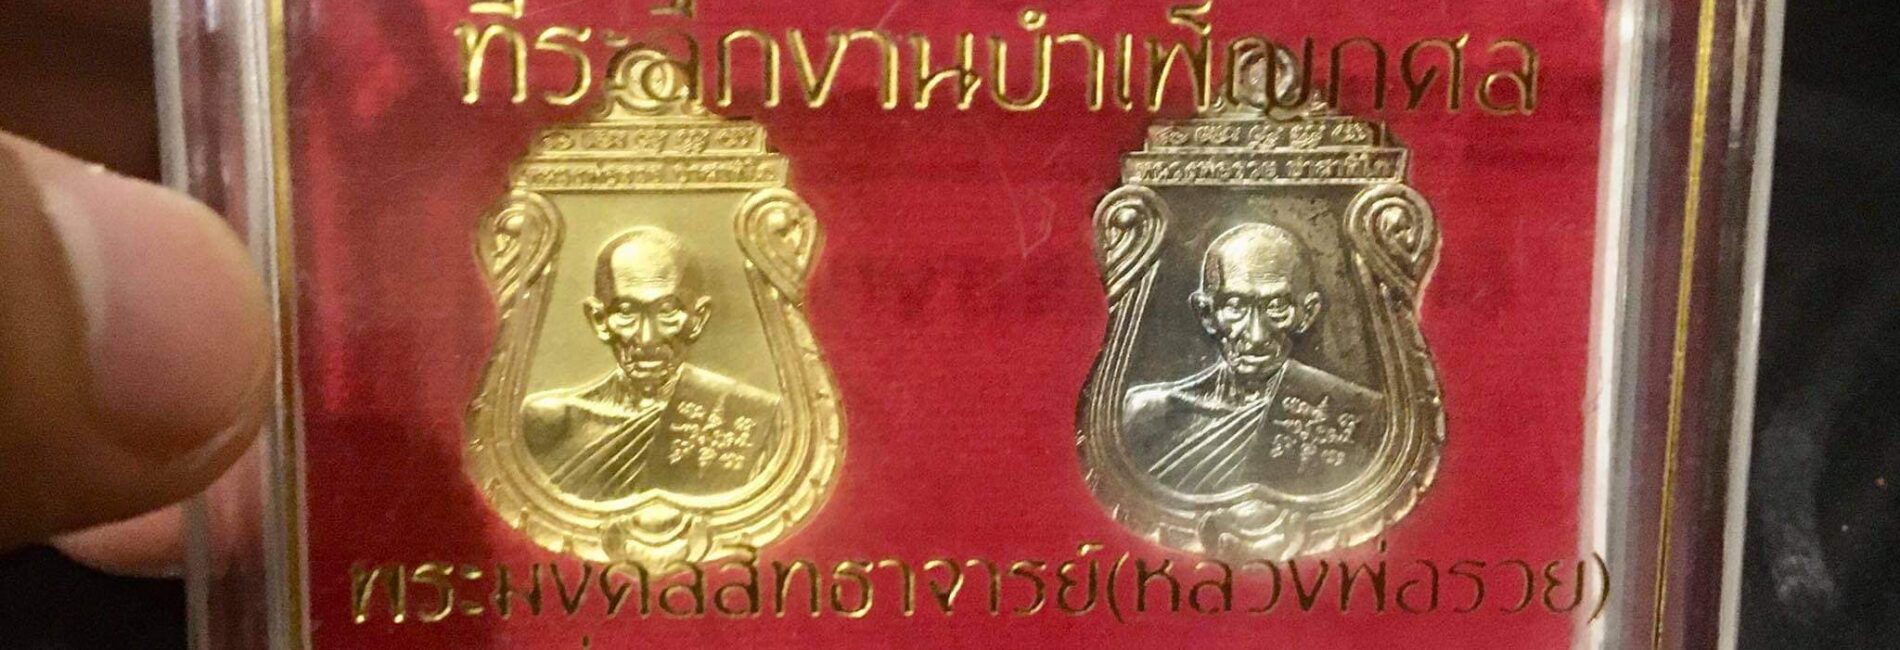 #นิยมไทย0952 (เจน บวร)
กระทู้ที่1 24/06/21 

เปิดประมูล